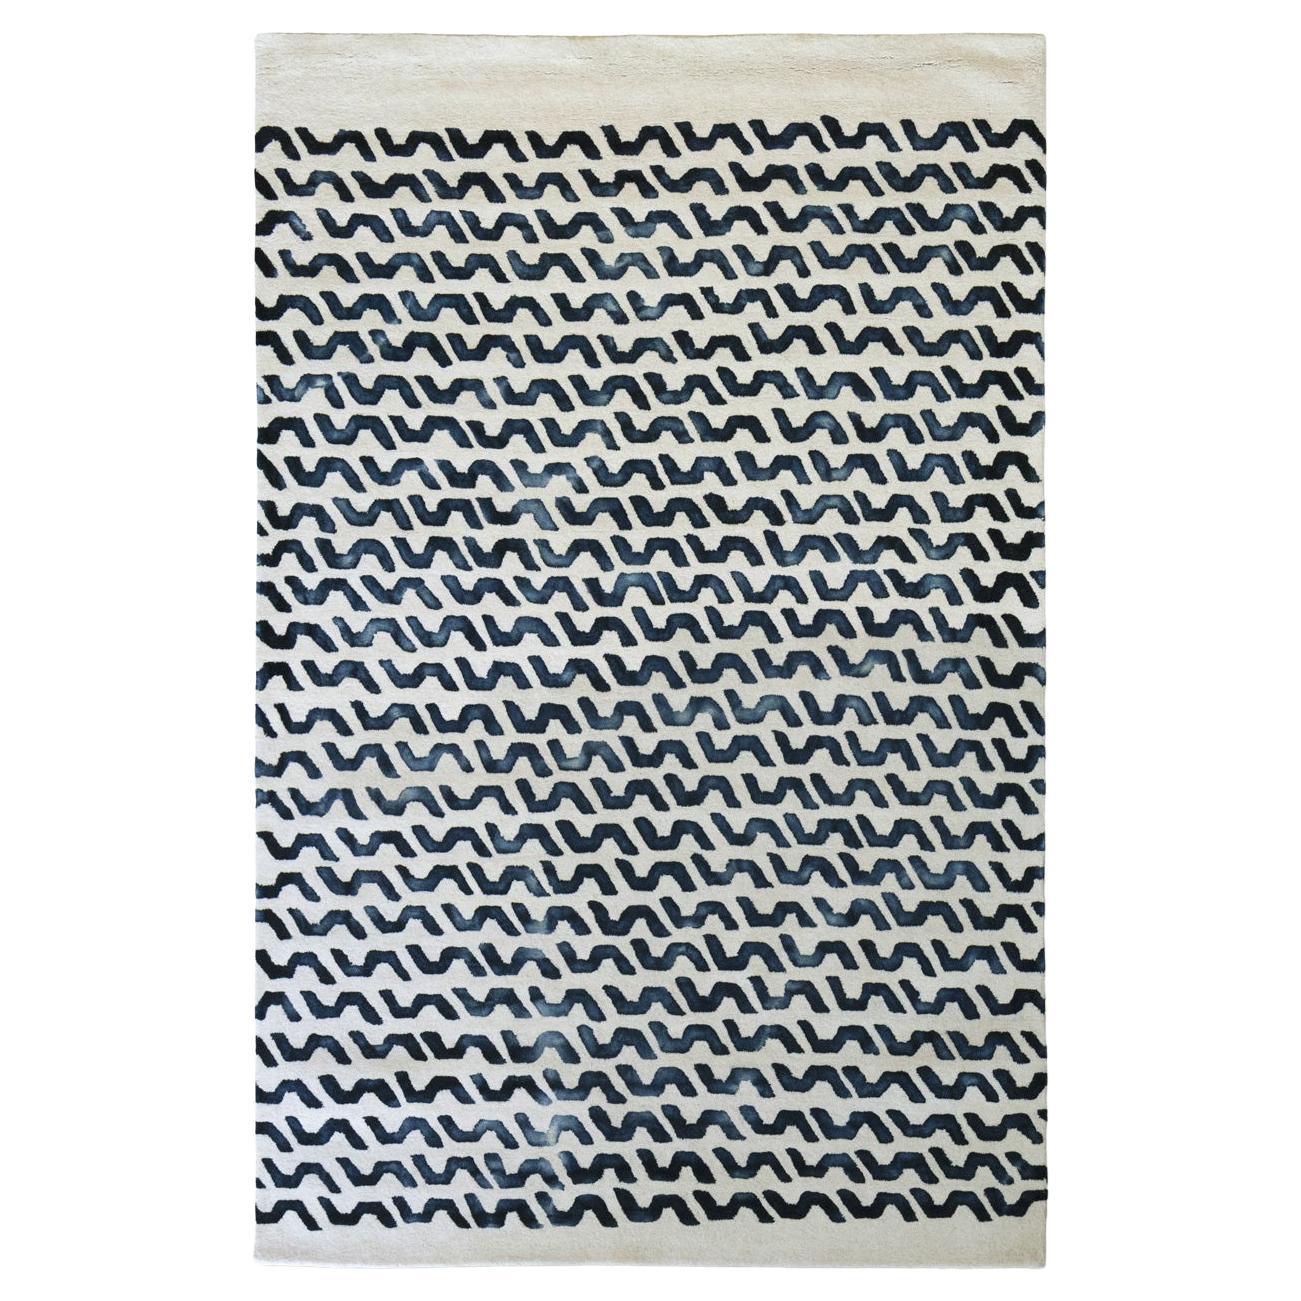 Tappeto Contemporaneo in Lana Motivi Tie-dye Design Deanna Comellini 200x300cm